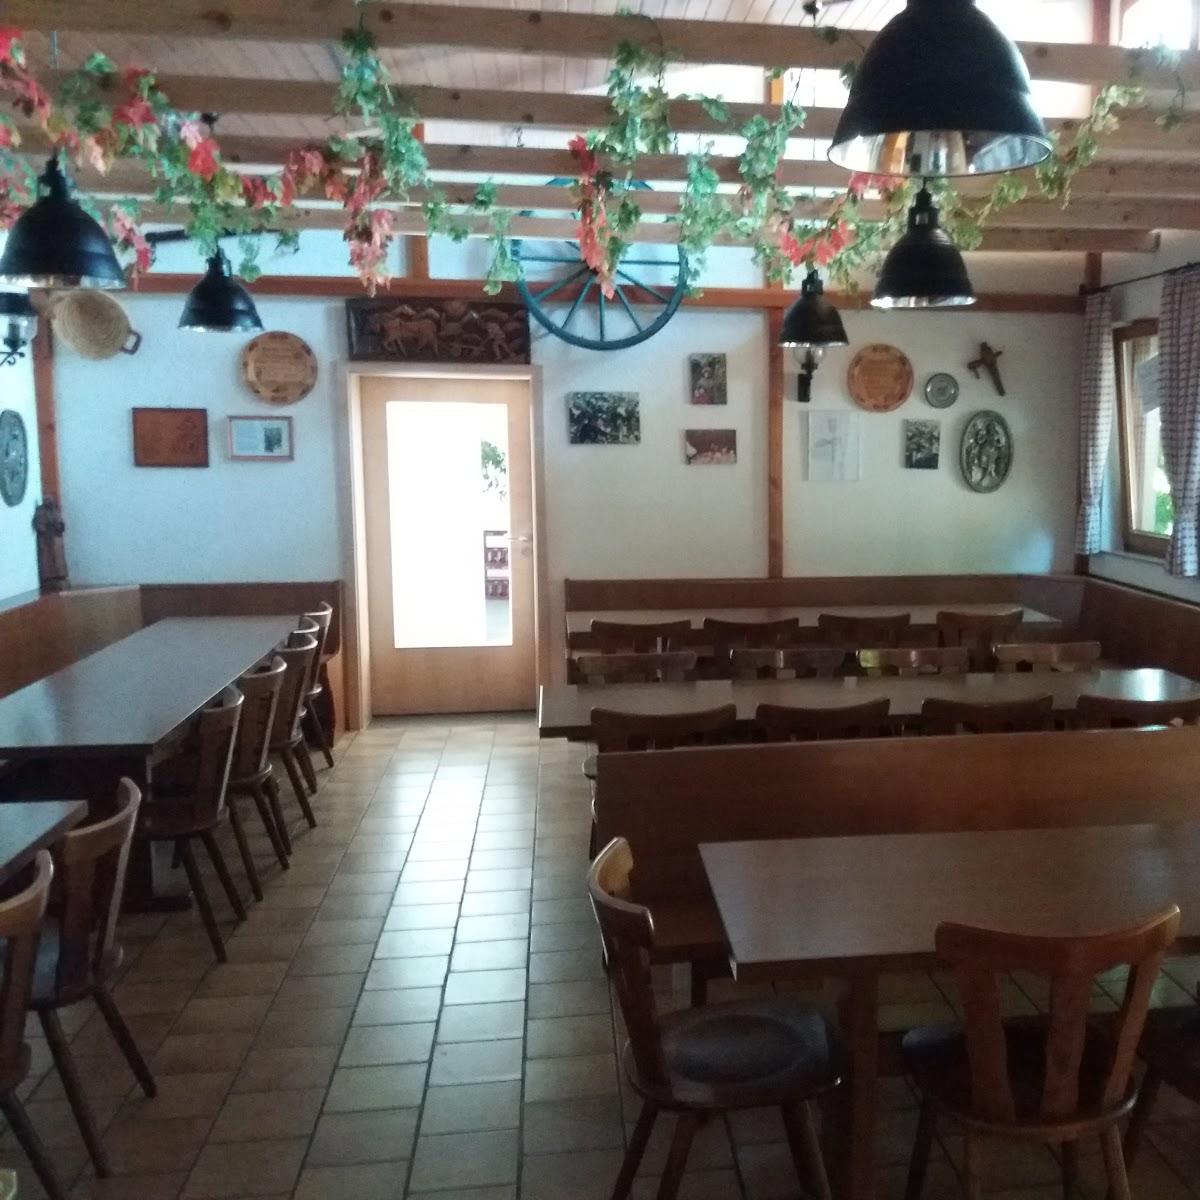 Restaurant "Weinlaube im Brückle - Besenstube" in Gerlingen